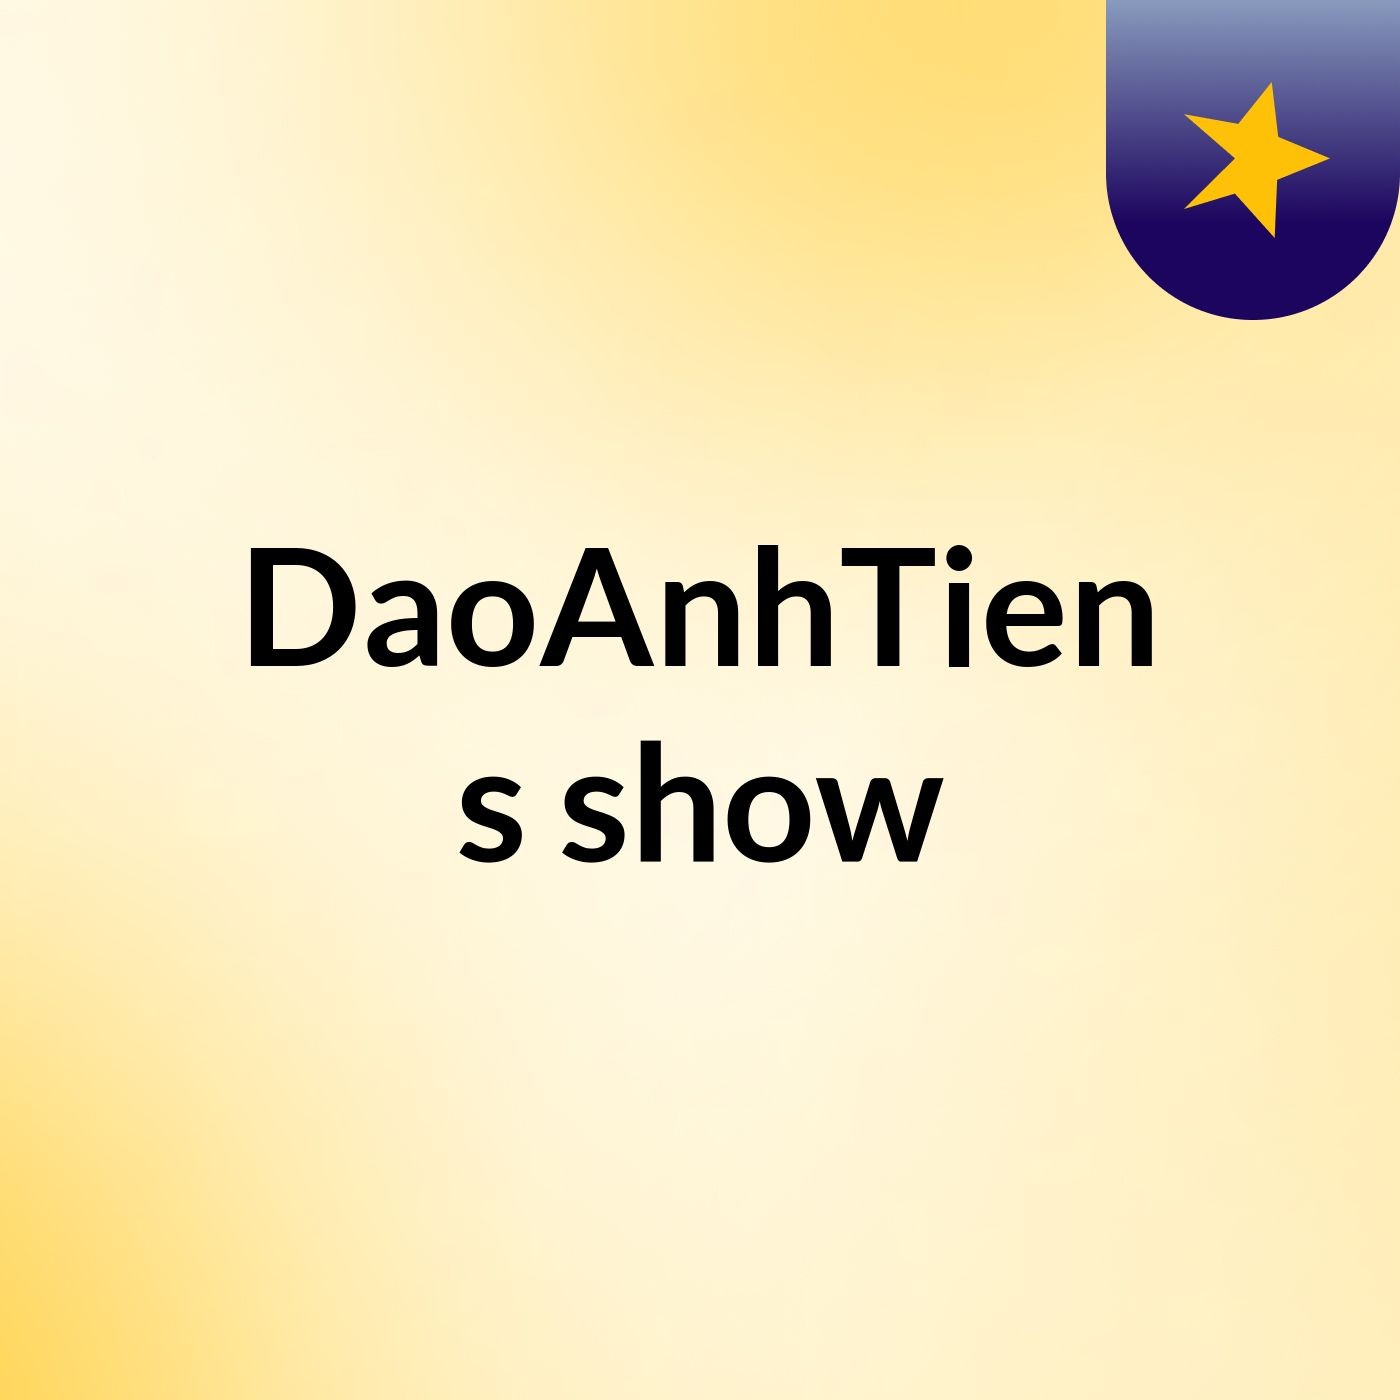 DaoAnhTien's show